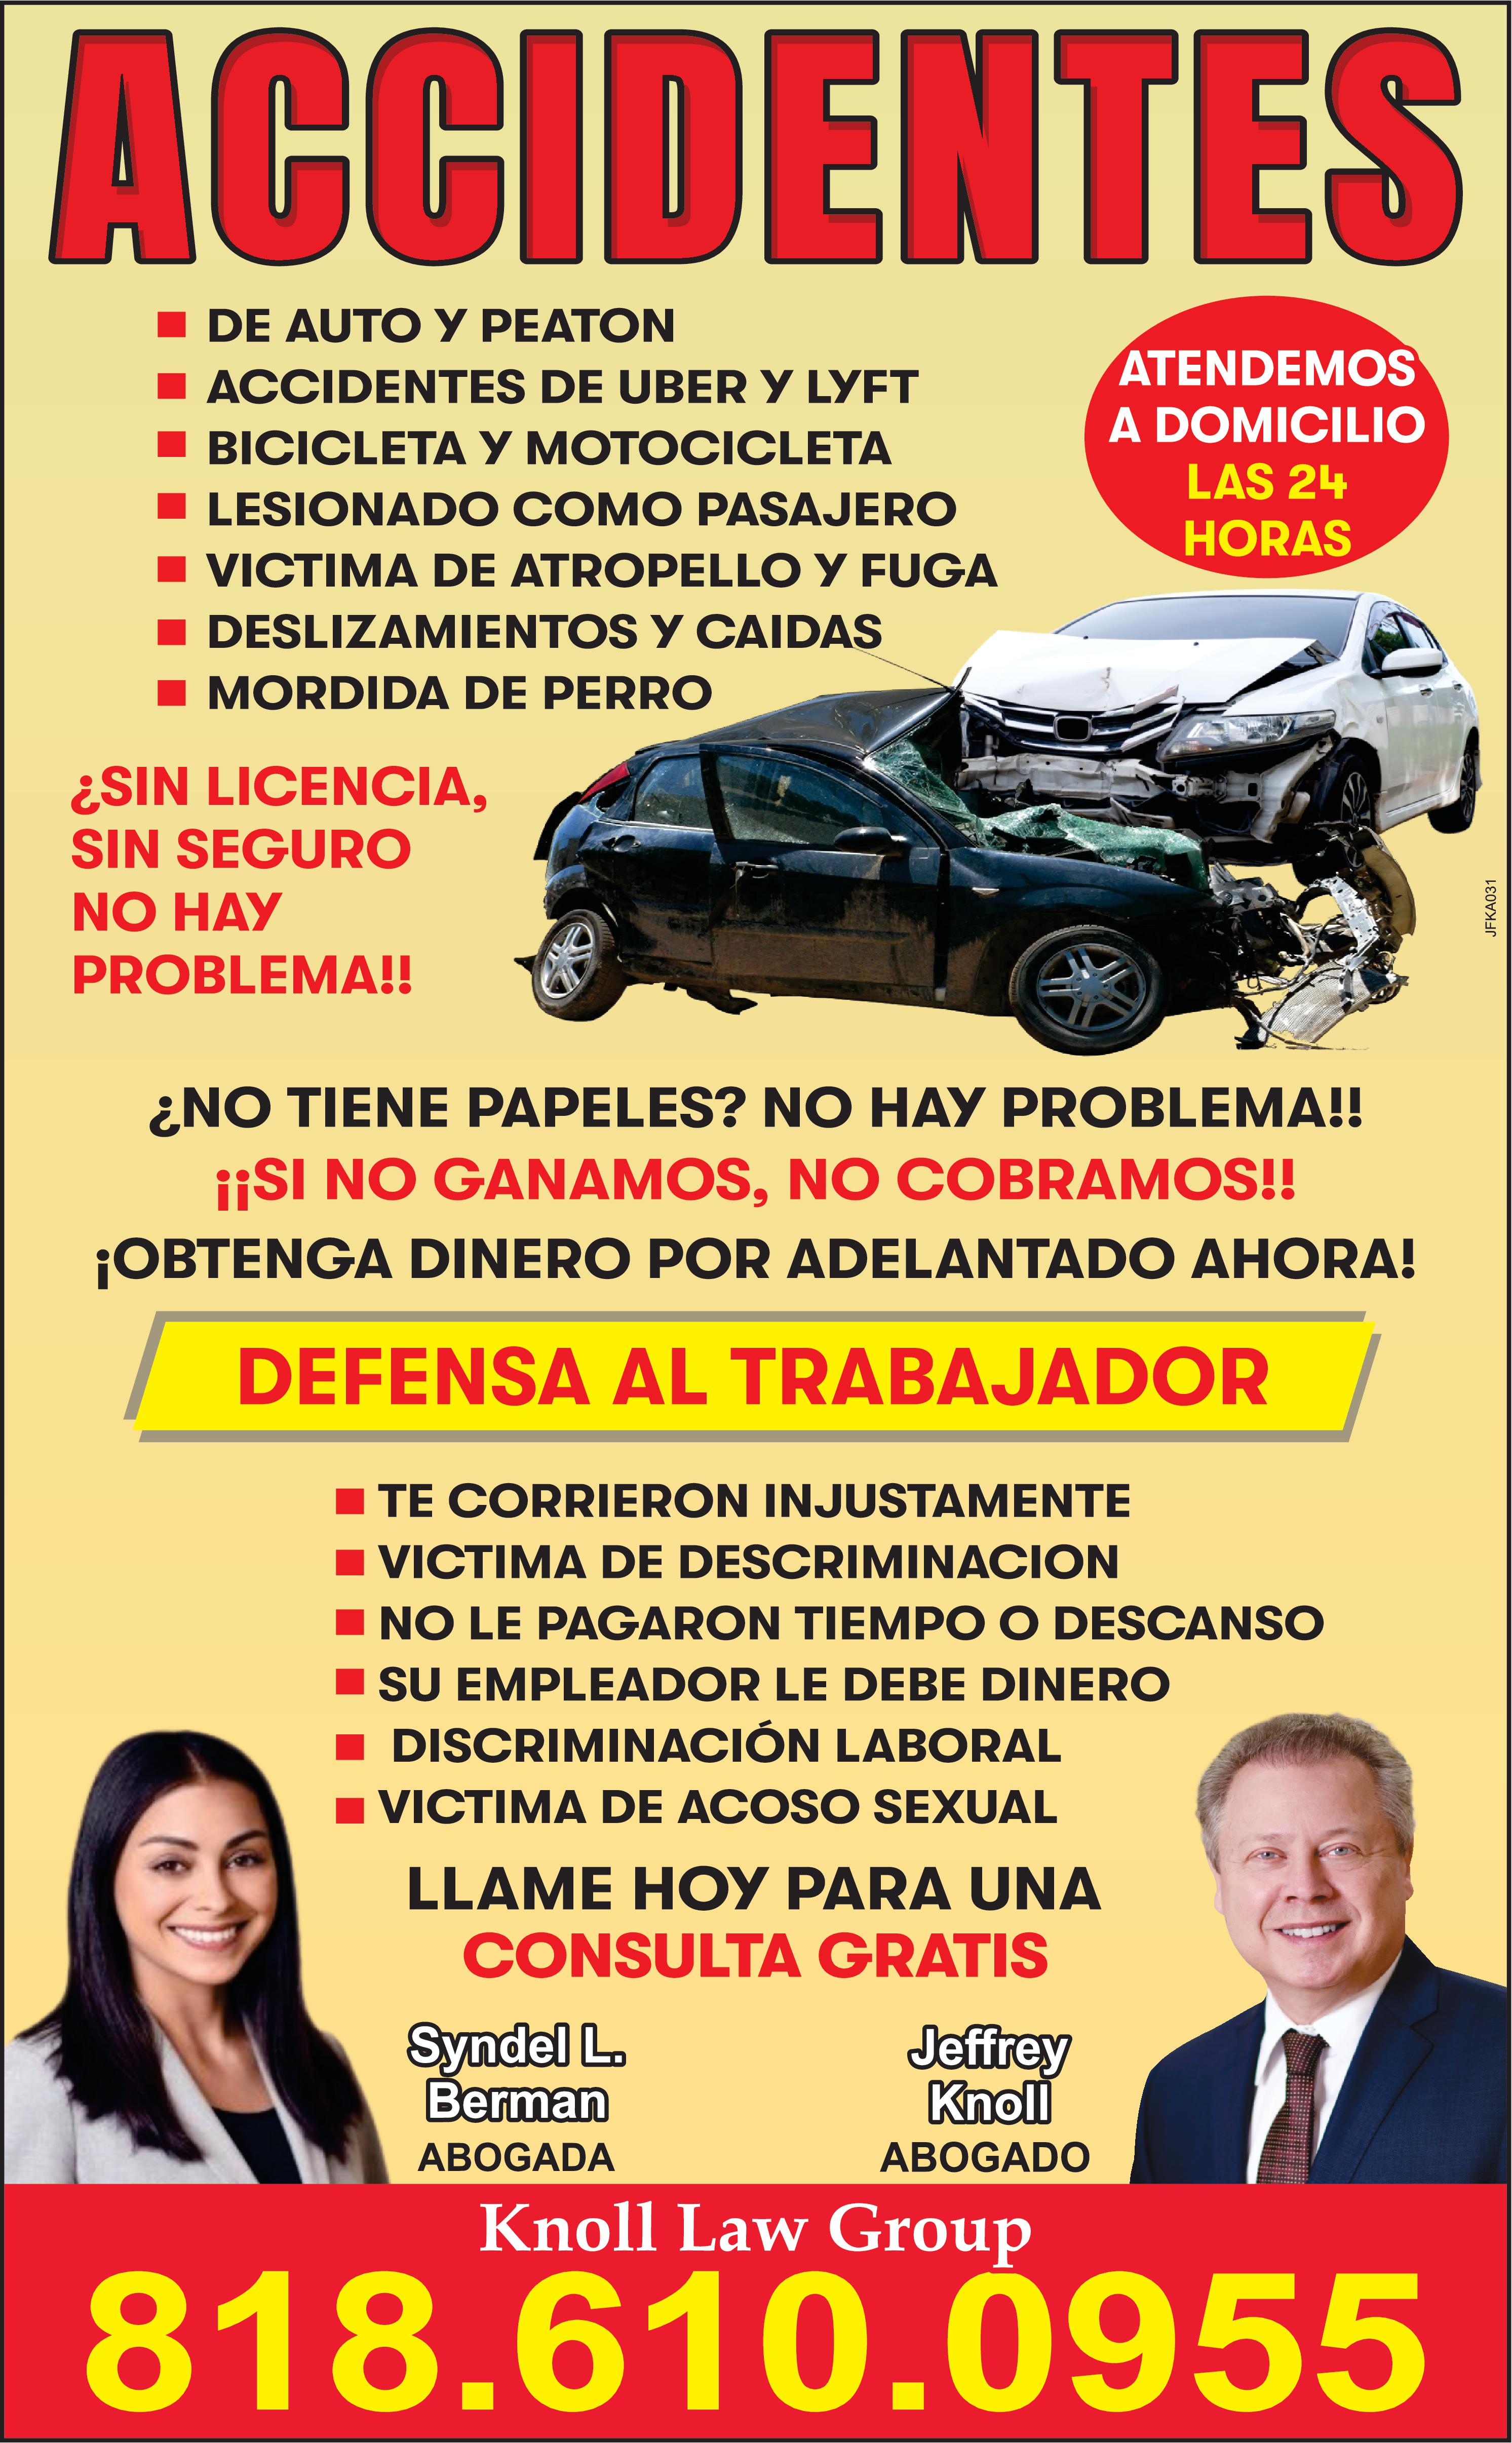 ACCIDENTES DE AUTO PEATON ACCIDENTES DE UBER LYFT BICICLETA MOTOCICLETA LESIONADO COMO PASAJERO VICTIMA DE ATROPELLO FUGA DESLIZAMIENTOS CAIDAS MORDIDA DE PERRO SIN LICENCIA SIN SEGURO NO HAY PROBLEMA !! NO TIENE PAPELES NO HAY PROBLEMA !! SI NO GANAMOS NO COBRAMOS !! OBTENGA DINERO POR ADELANTADO AHORA DEFENSA AL TRABAJADOR ATENDEMOS DOMICILIO LAS 24 HORAS TE CORRIERON INJUSTAMENTE VICTIMA DE DESCRIMINACION NO LE PAGARON TIEMPO DESCANSO SU EMPLEADOR LE DEBE DINERO DISCRIMINACIÓN LABORAL VICTIMA DE ACOSO SEXUAL LLAME HOY PARA UNA CONSULTA GRATIS Syndel L. Berman ABOGADA Jeffrey Knoll ABOGADO Knoll Law Group 800.954.5459 JFKA031